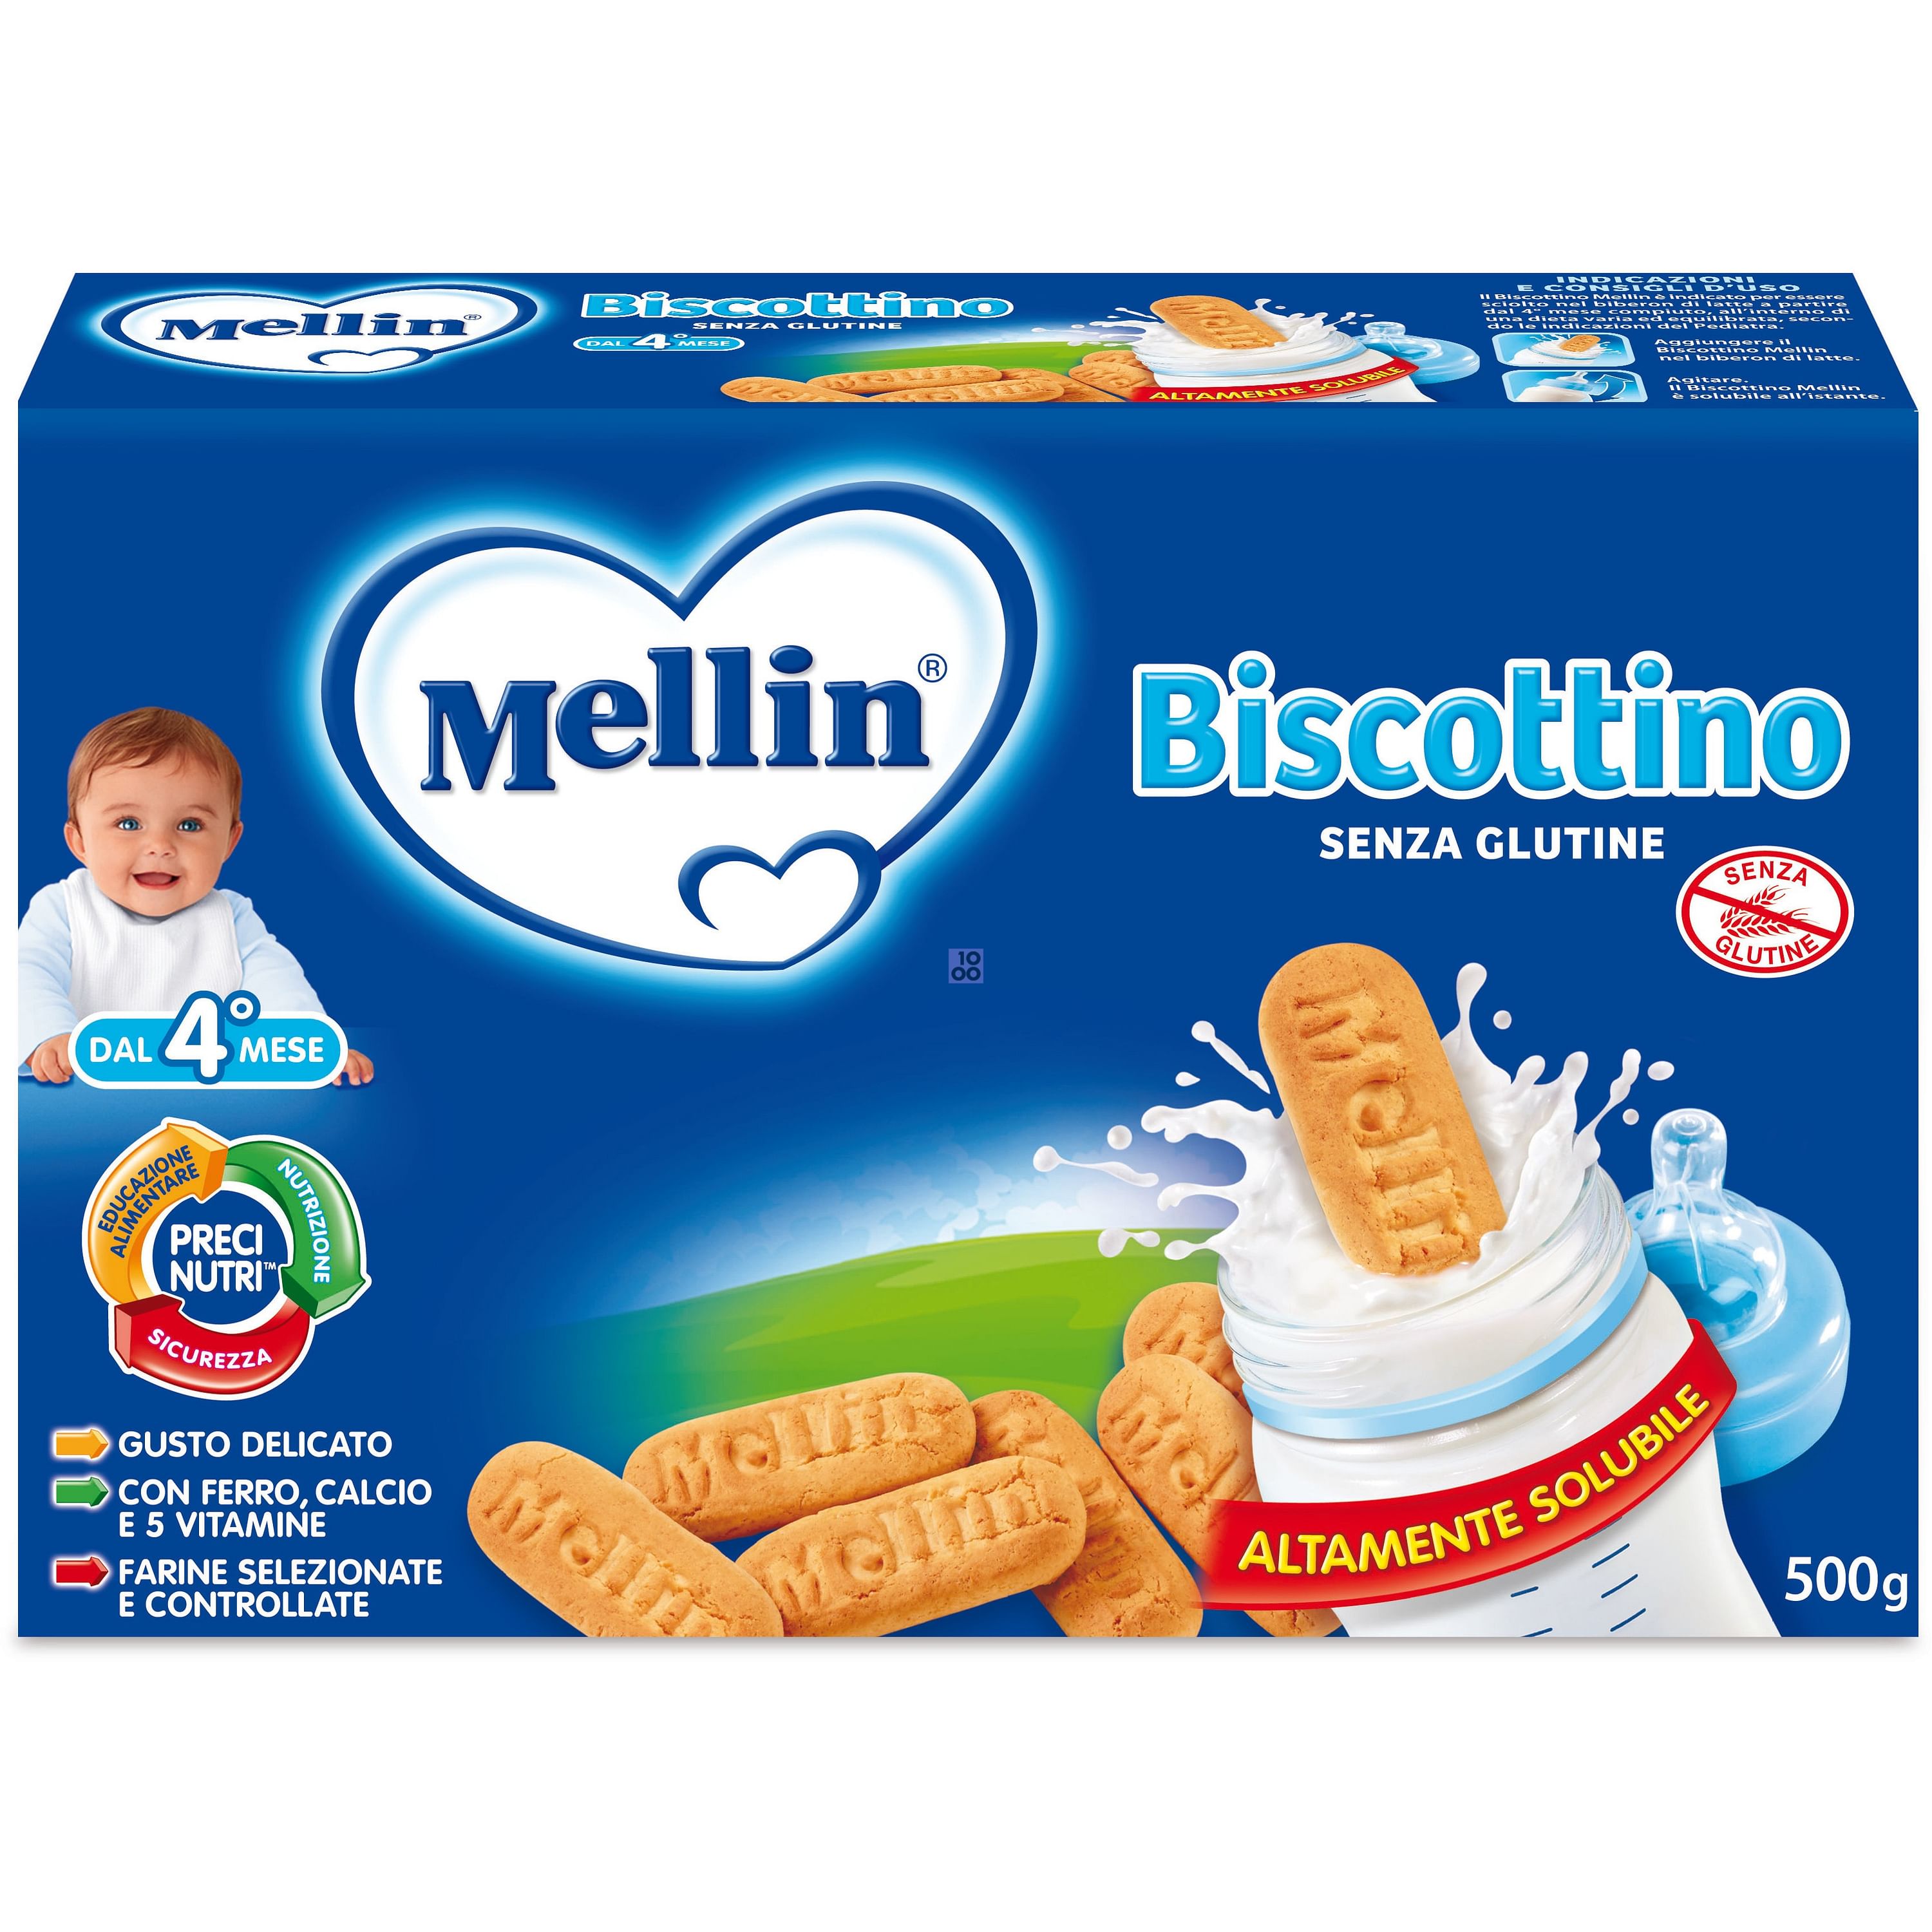 Mellin: Omogenizzati, Latte e Biscotti all'ingrosso